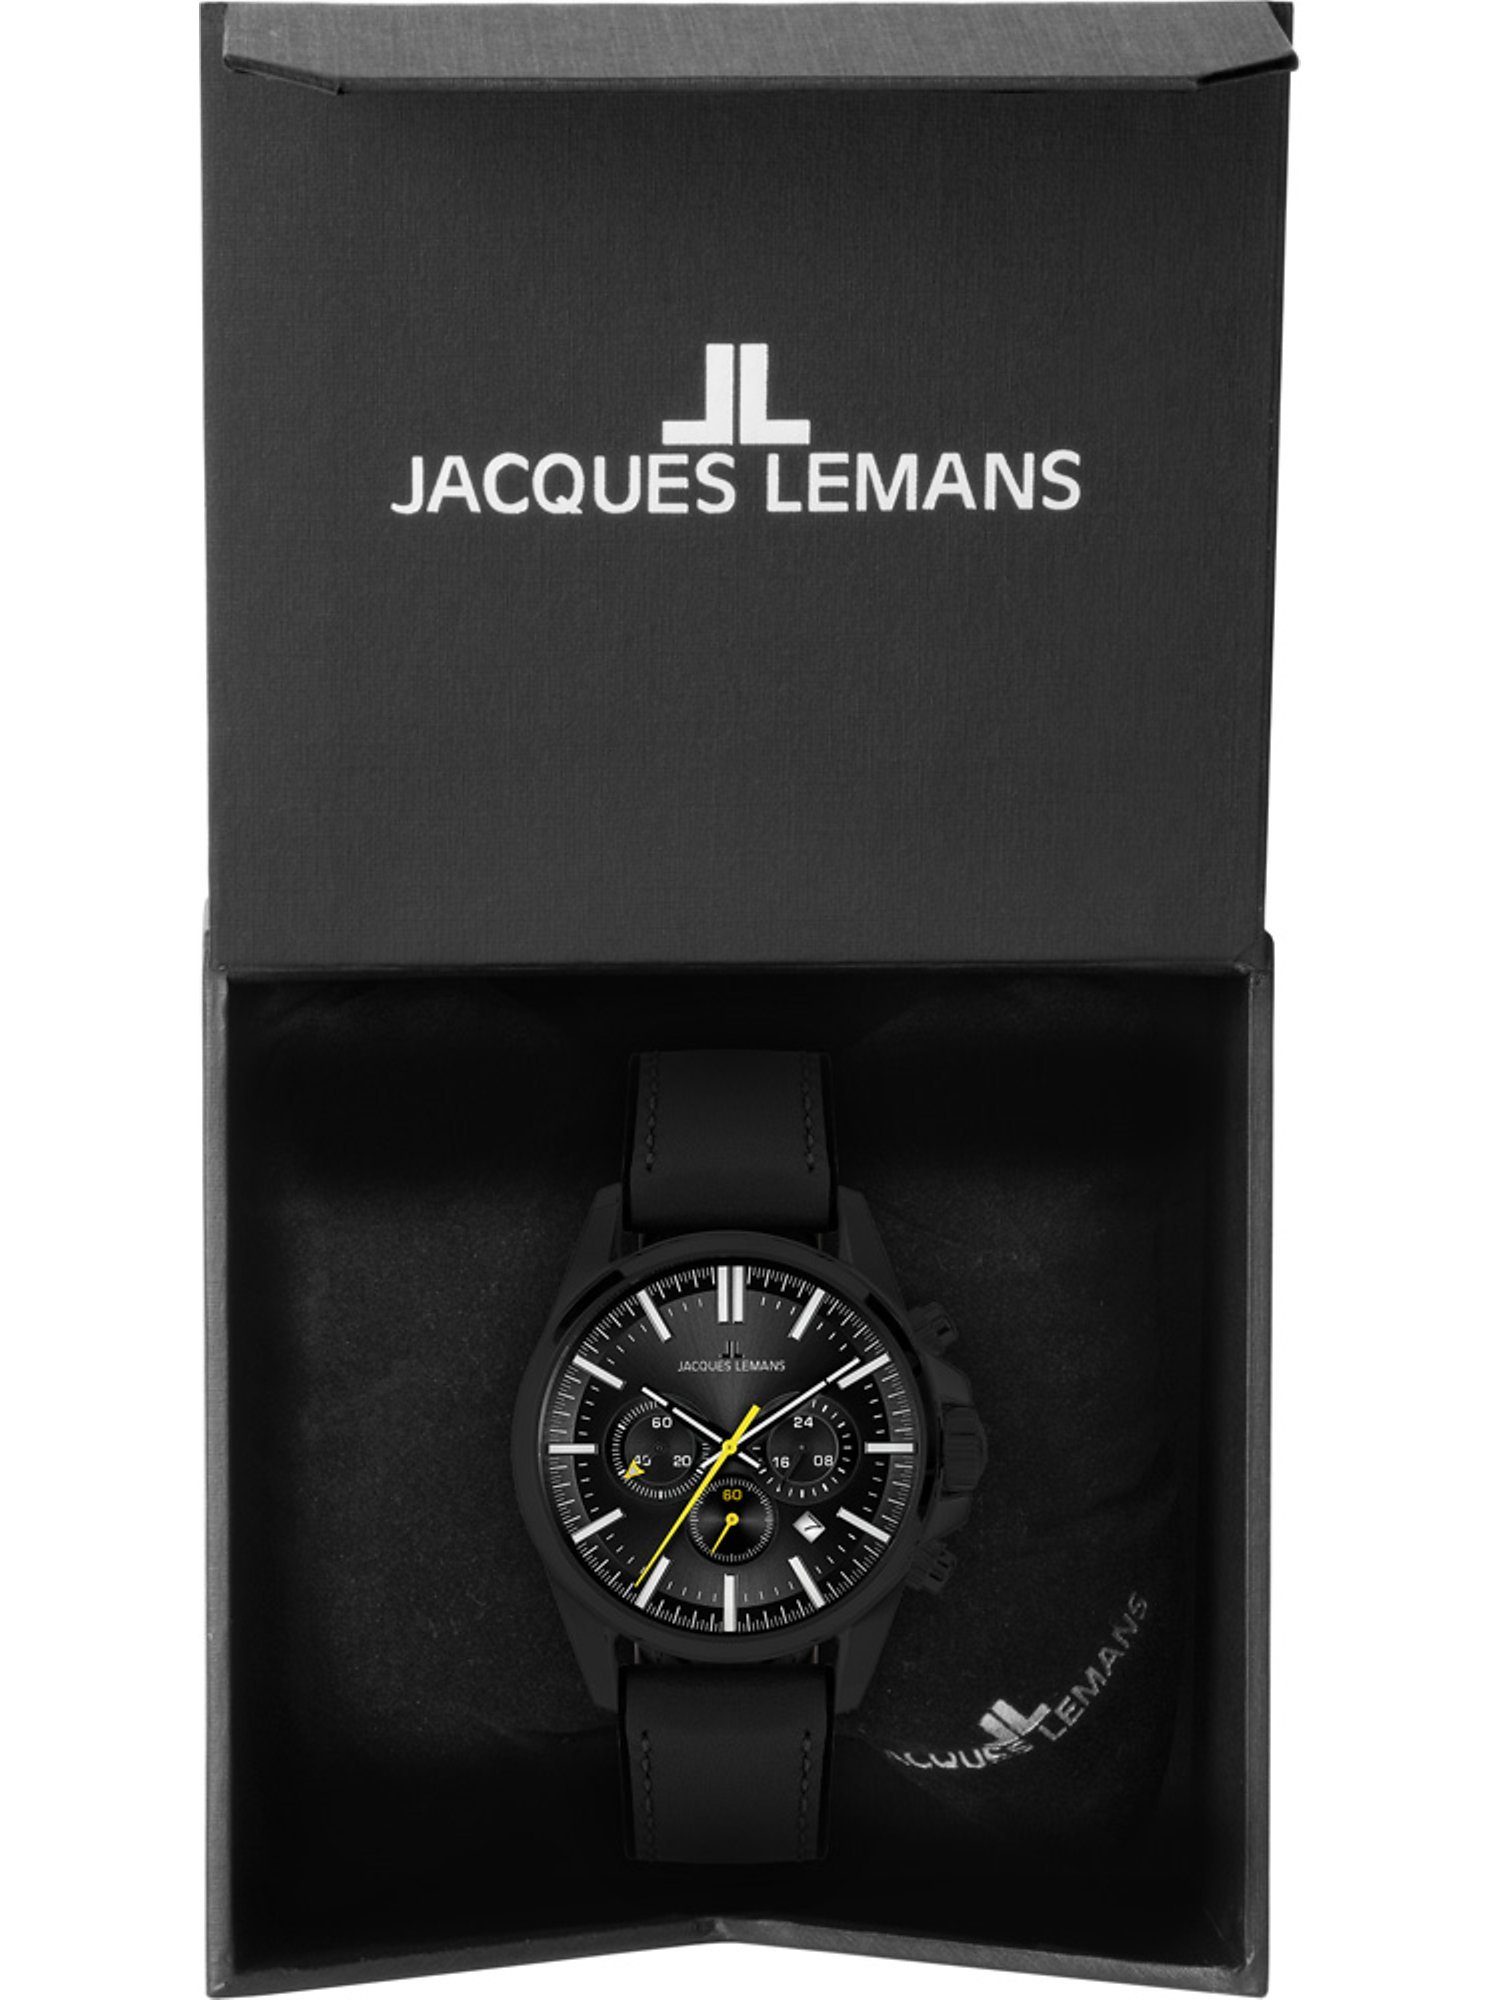 Herren-Uhren Jacques Chronograph Lemans schwarz Klassikuhr Quarz, Lemans Analog Jacques